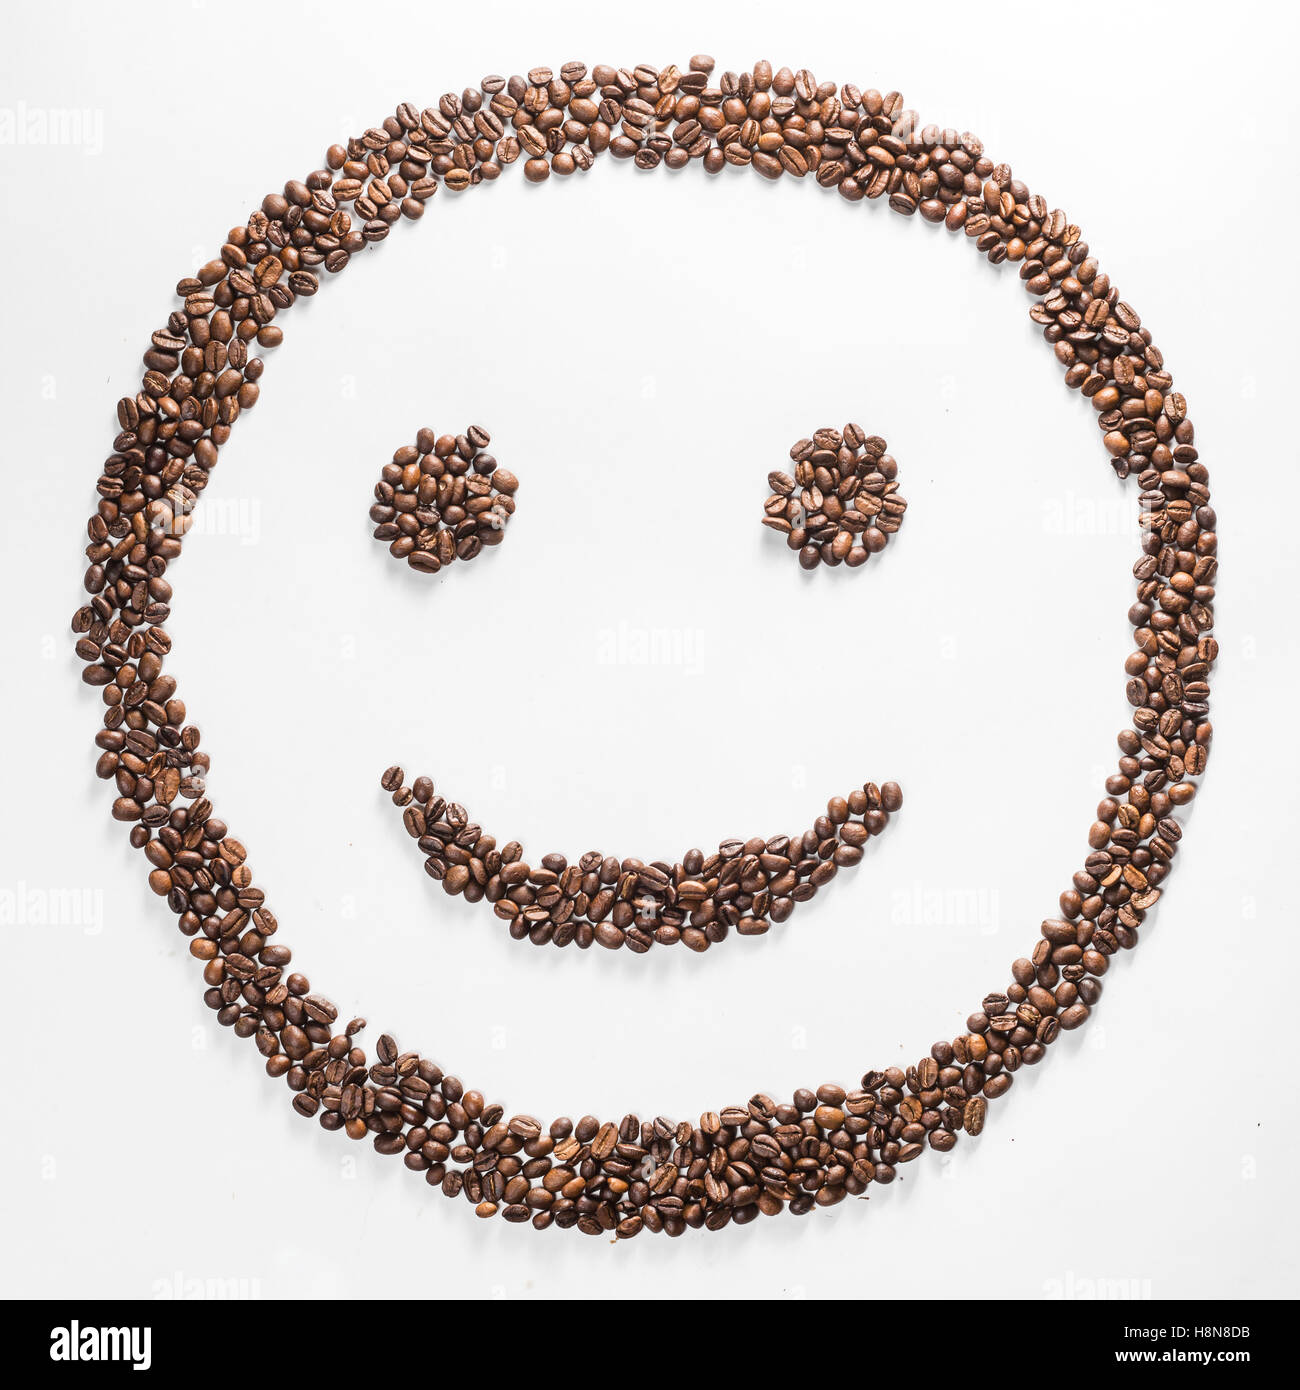 Lächeln Sie geformten Kaffeebohnen isoliert auf weißem Hintergrund. Komposition für Blogger, Designer, websites Stockfoto